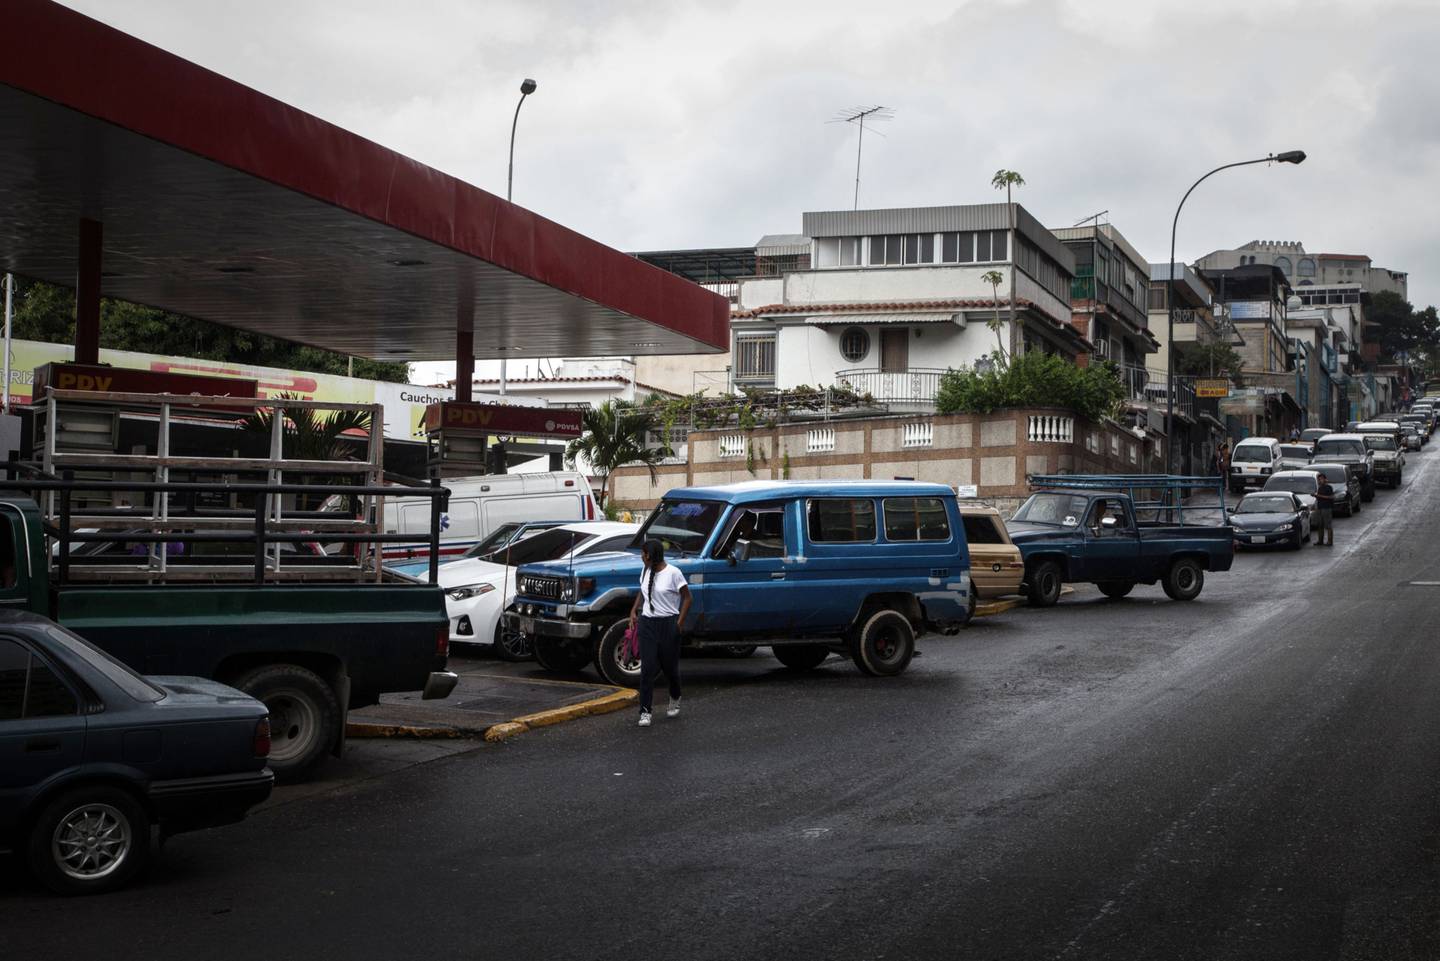 Con una cifra de importaciones automotrices disminuida, y ante la ausencia de créditos bancarios, al venezolano le queda como opción un parque automotor obsoleto. (Foto: Bloomberg).dfd